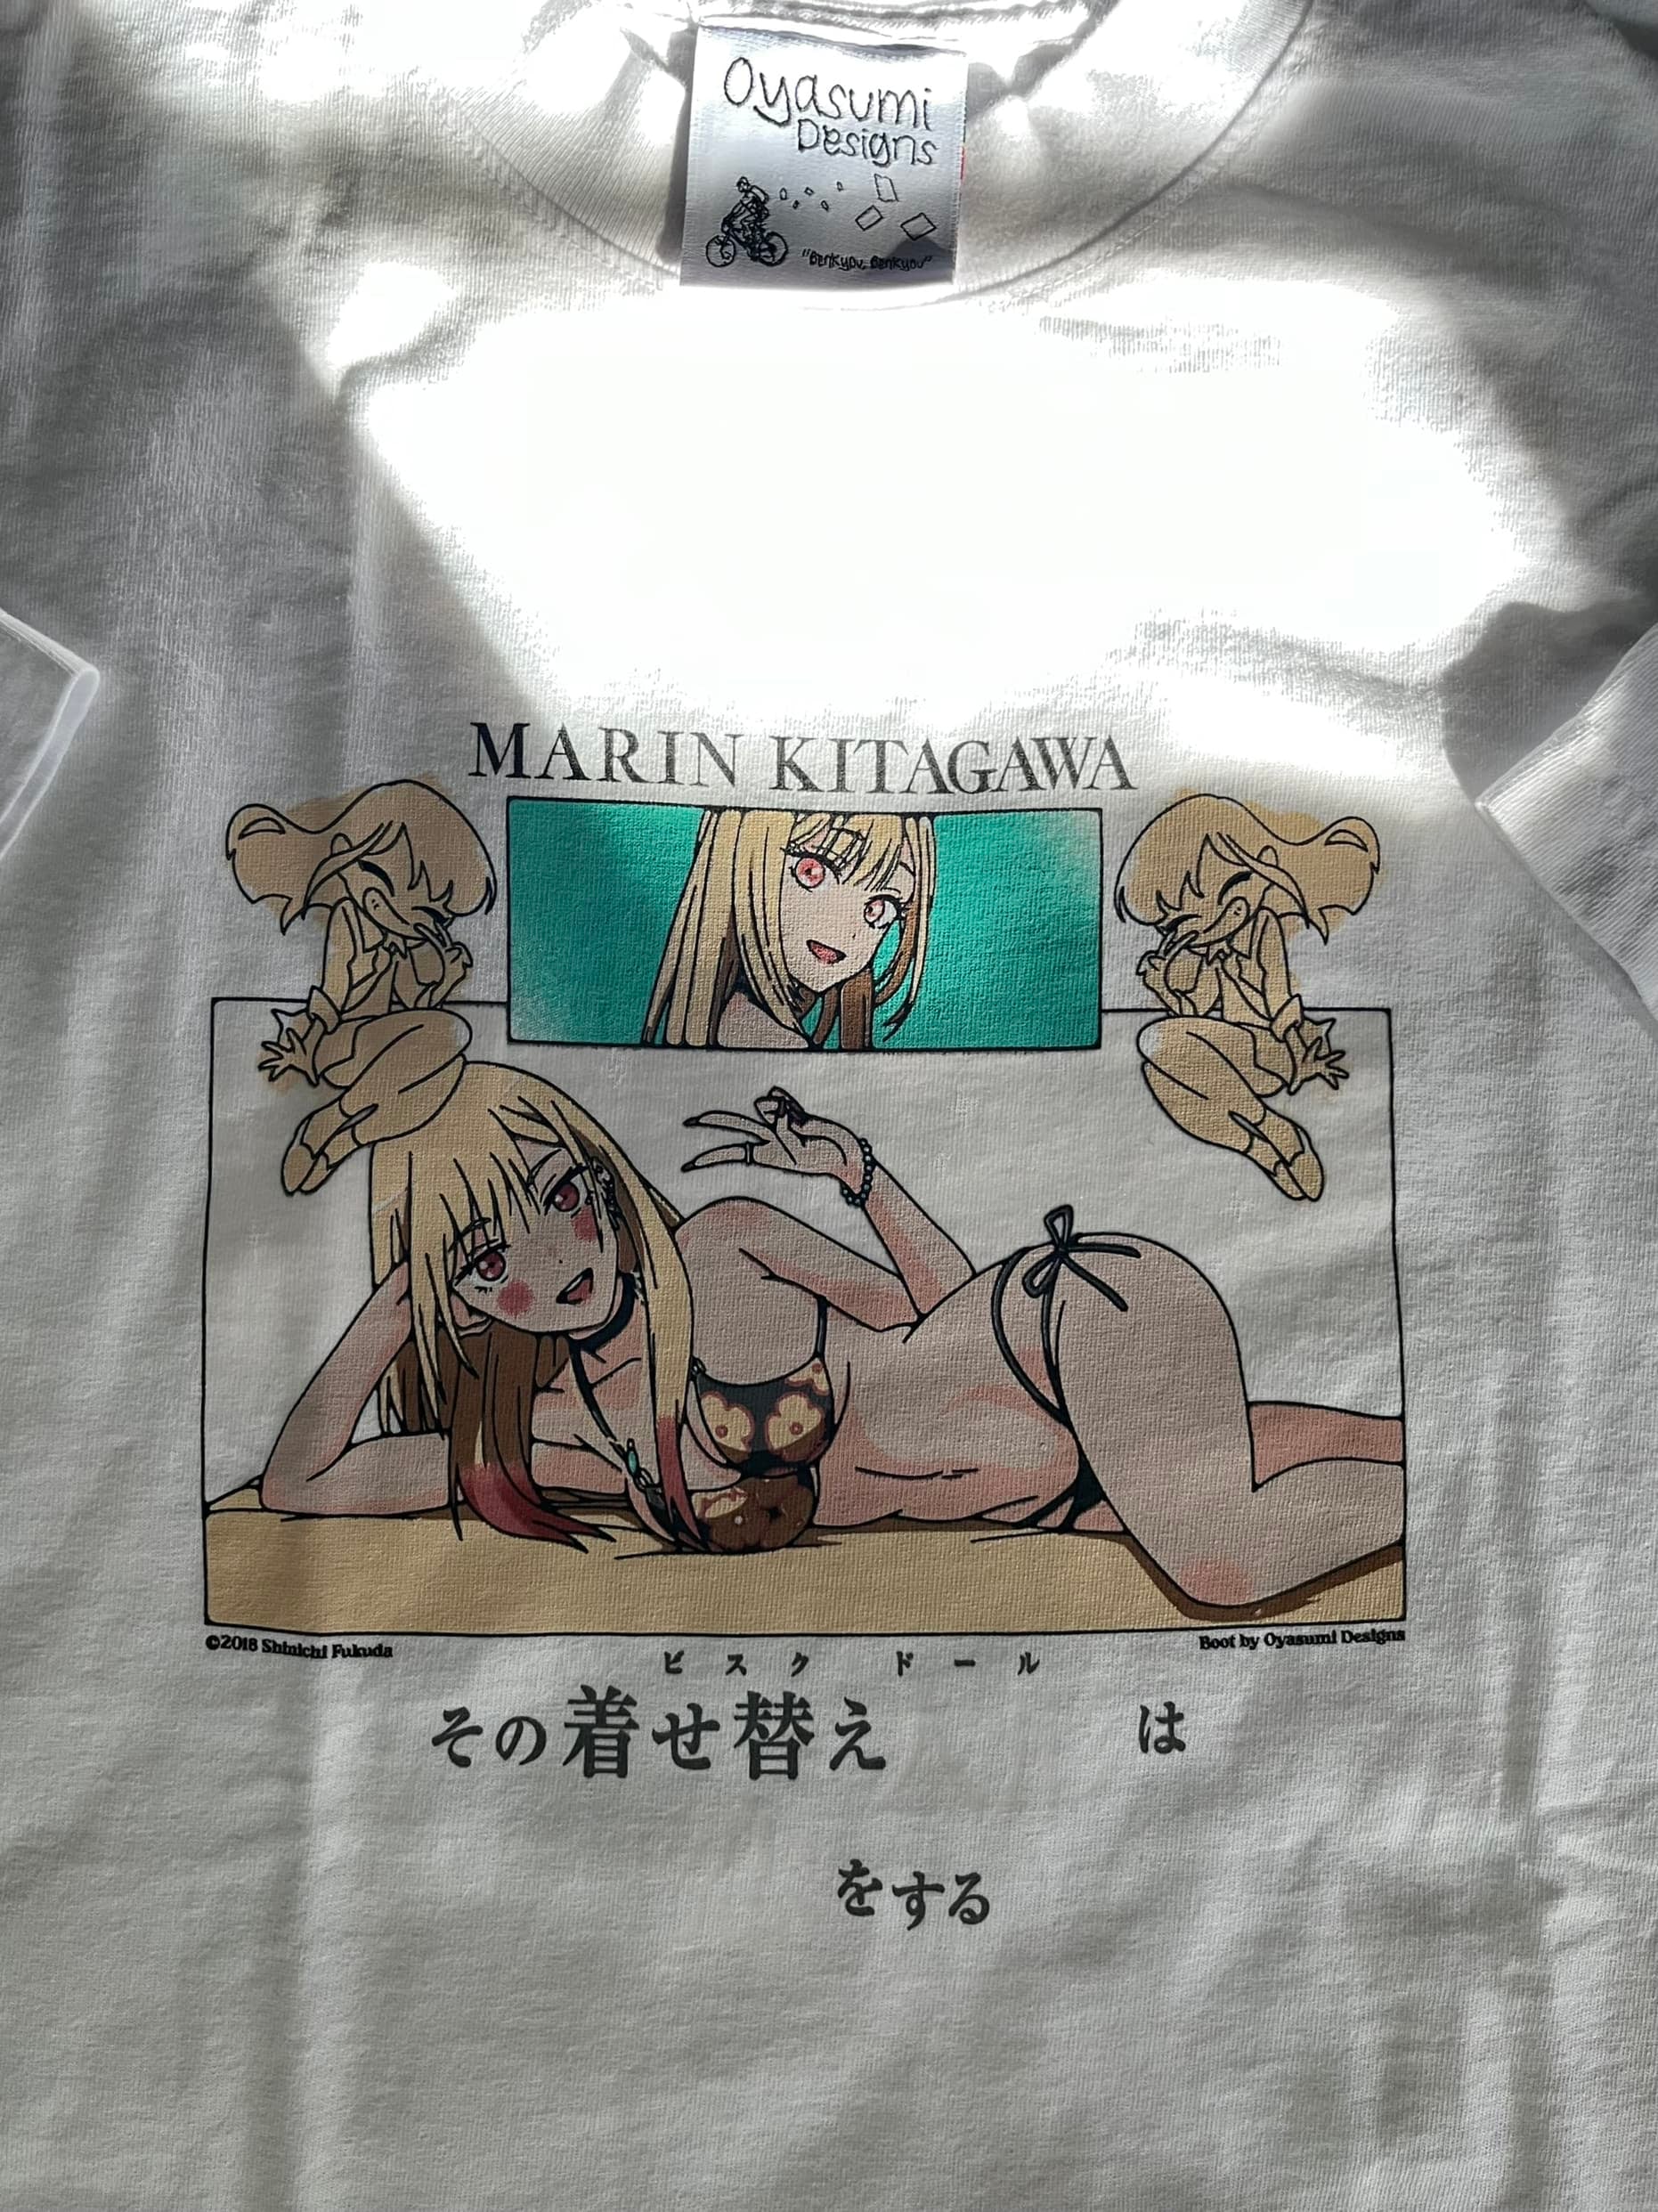 UV Darling Archive Booyasumi T-Shirt